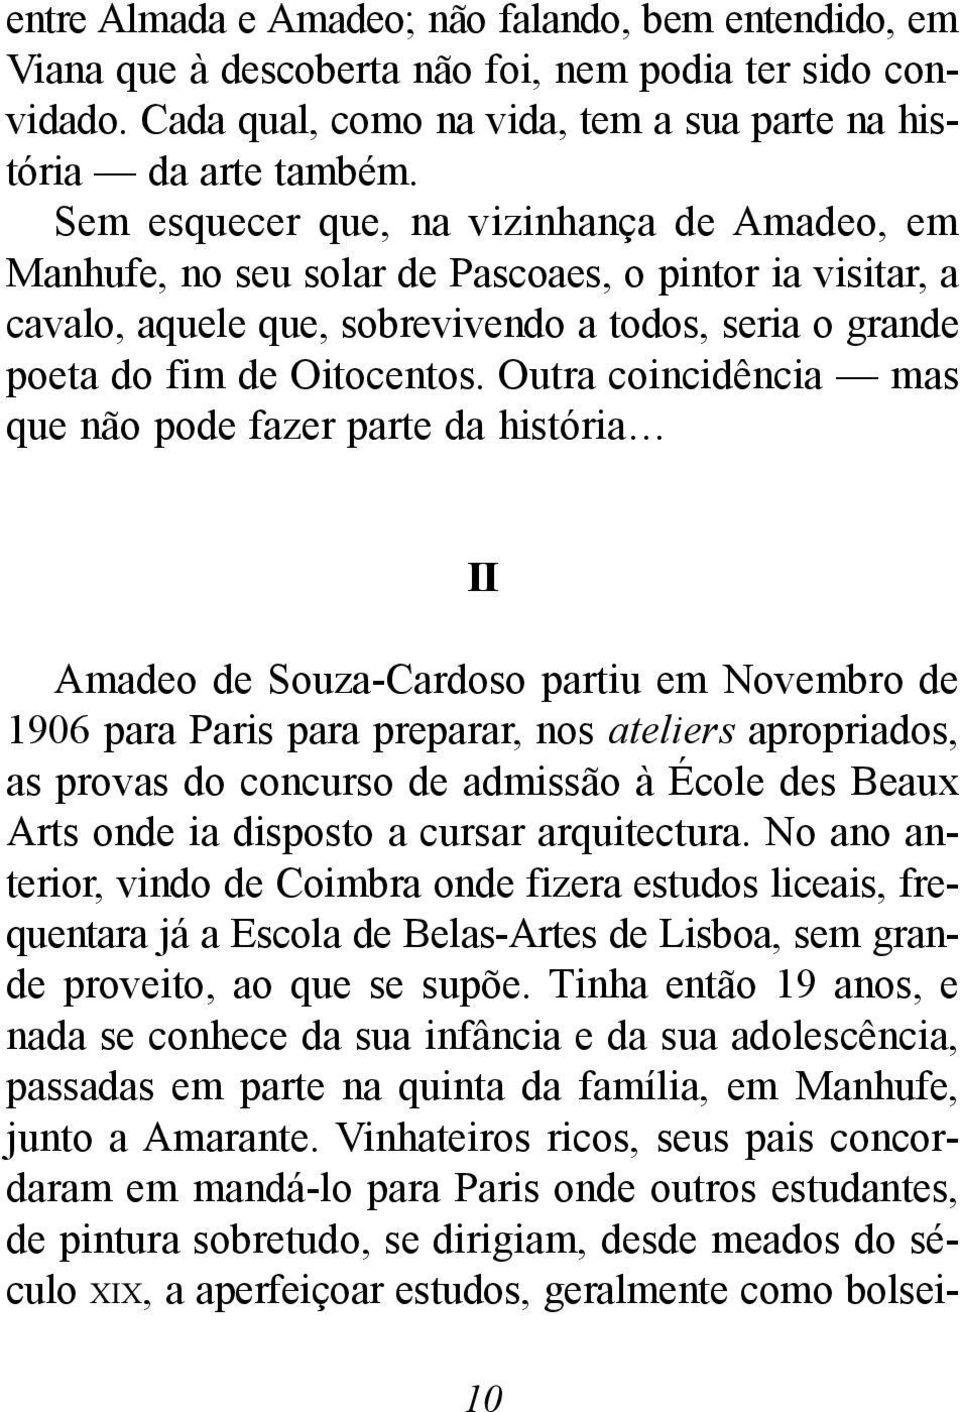 Outra coincidência mas que não pode fazer parte da história II Amadeo de Souza-Cardoso partiu em Novembro de 1906 para Paris para preparar, nos ateliers apropriados, as provas do concurso de admissão